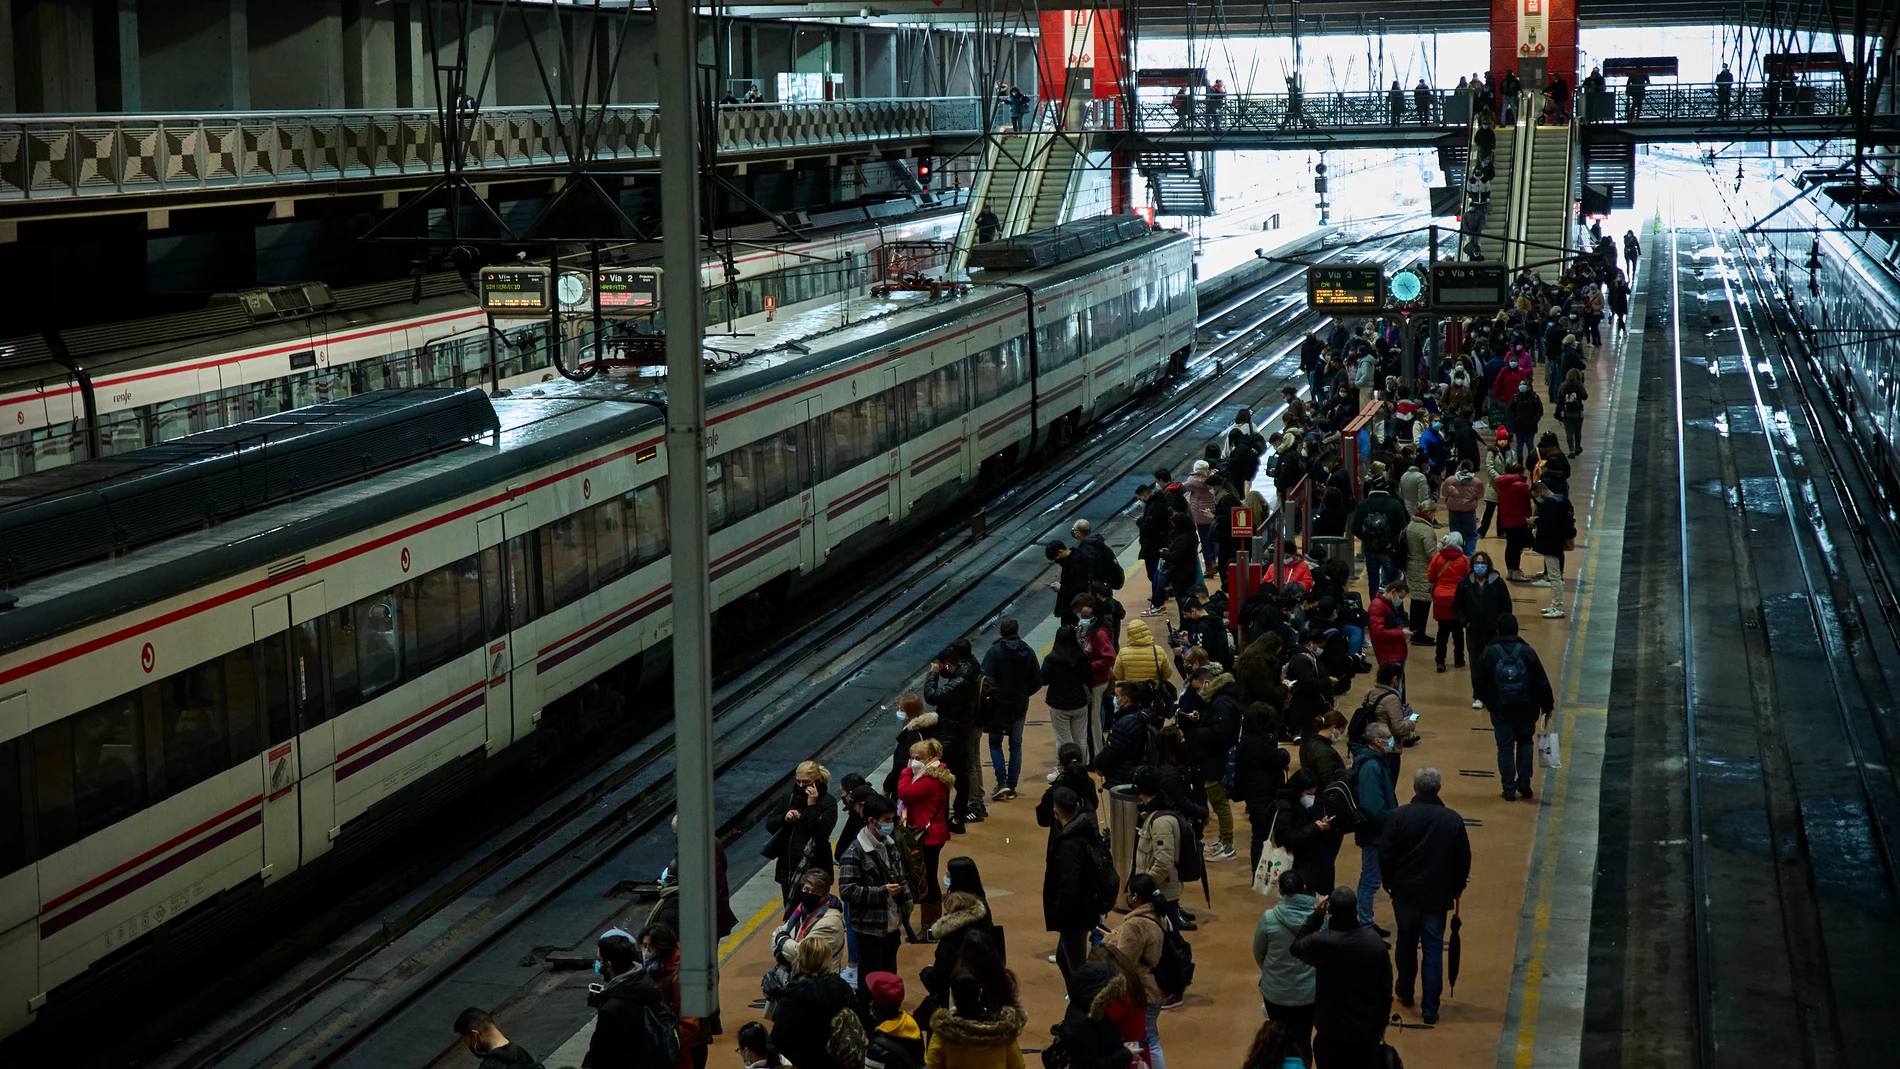 Una incidencia en Chamartín provoca retrasos y acumulaciones de pasajeros en Renfe Cercanías y trenes de Madrid